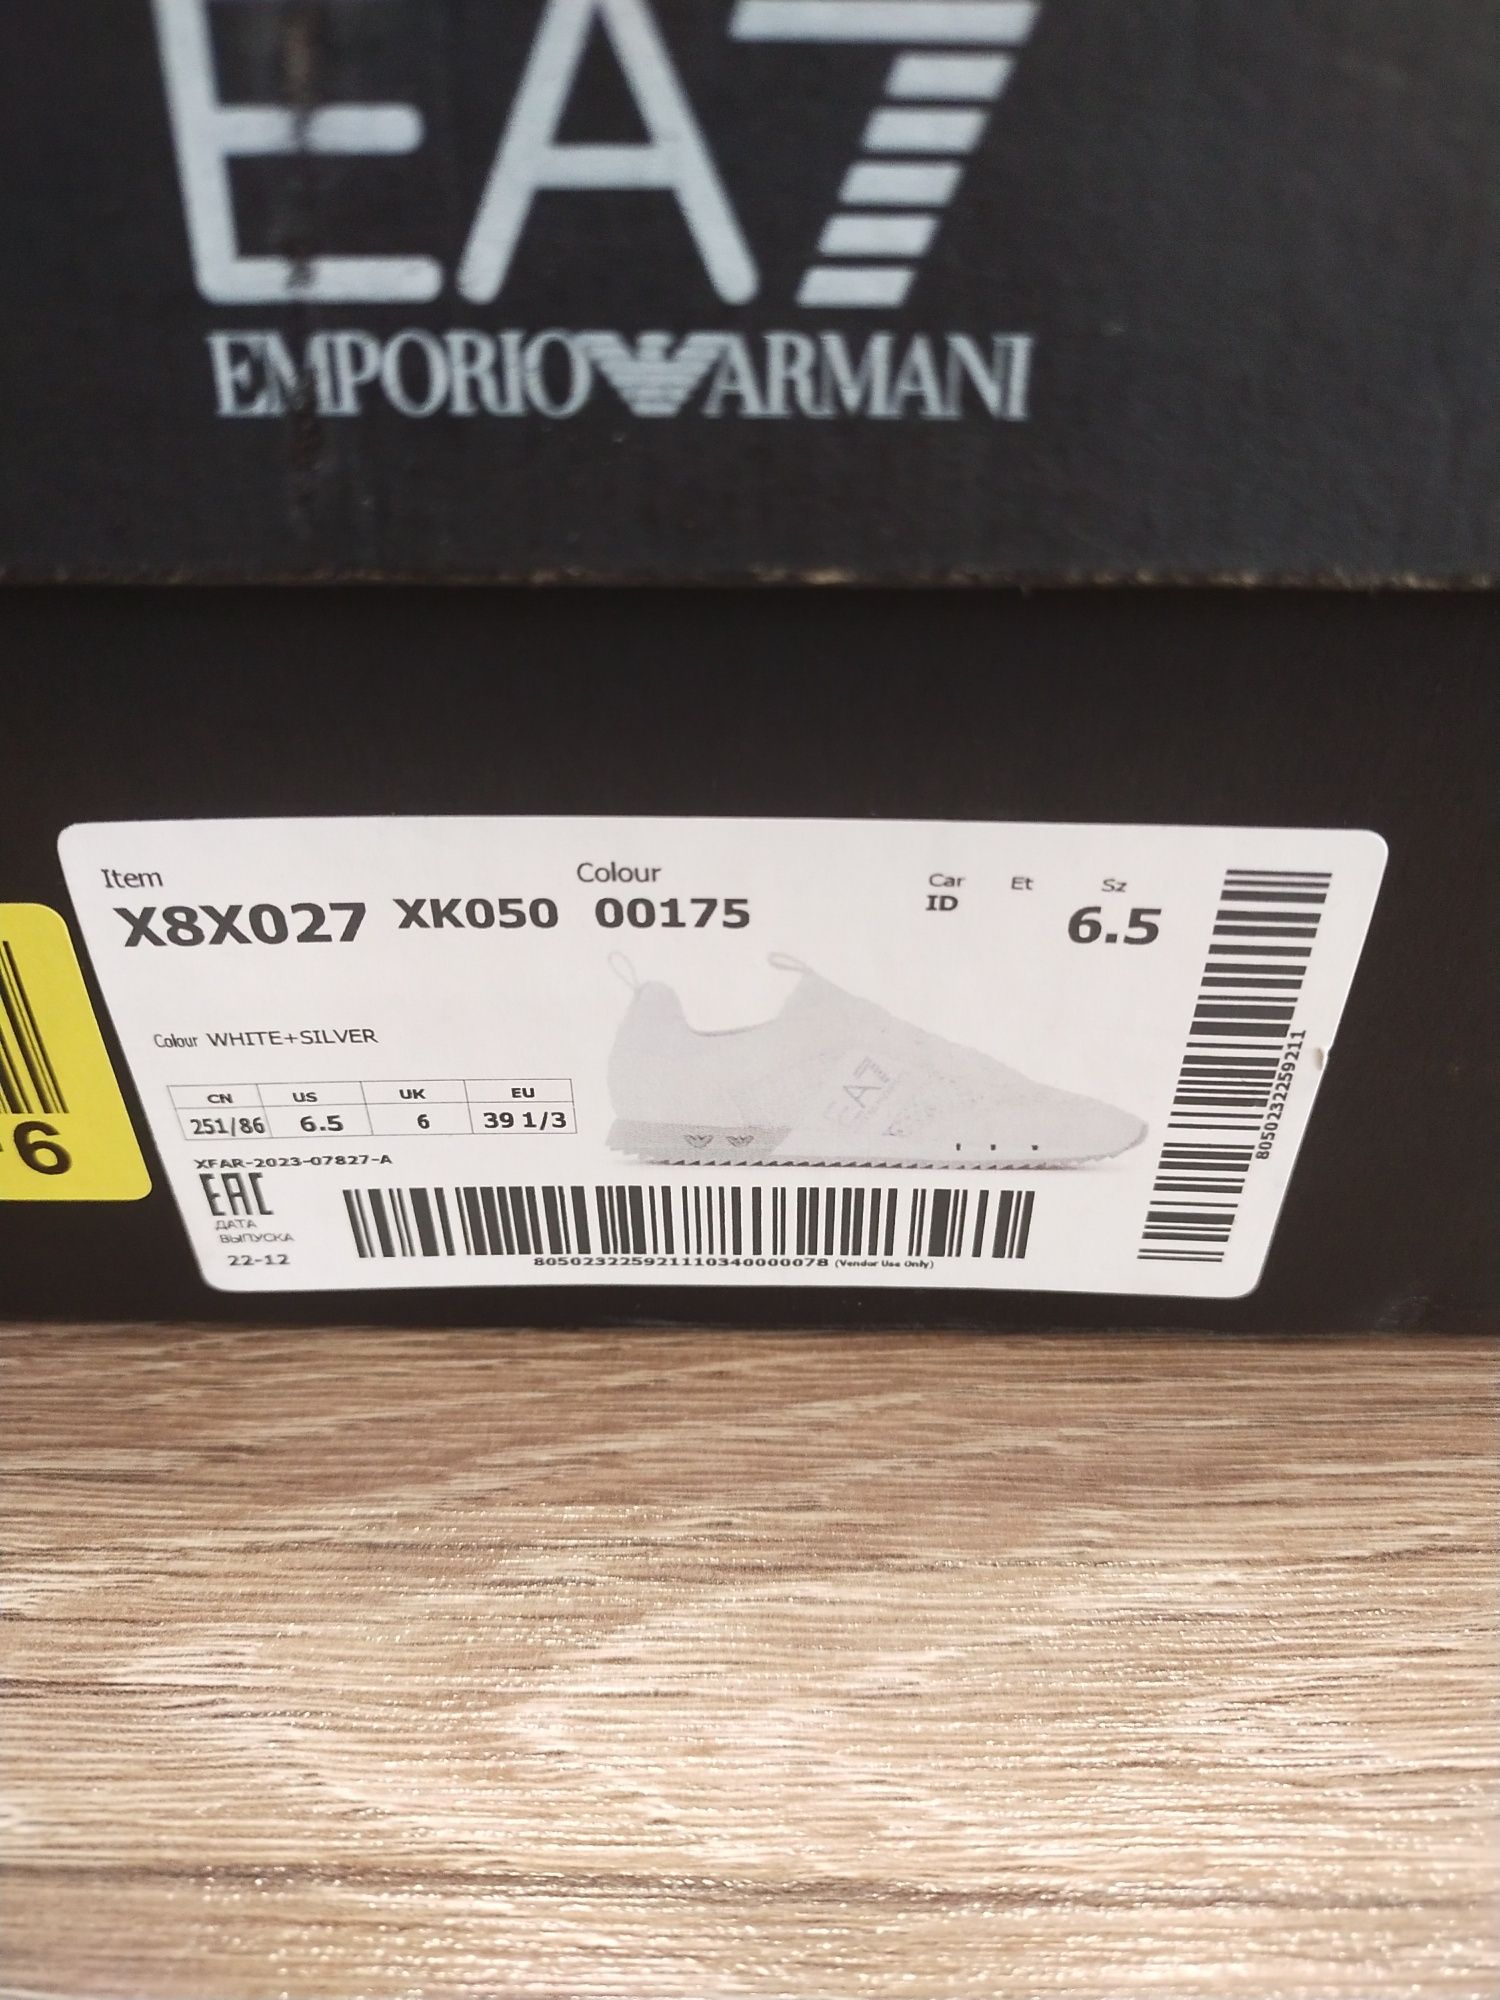 Damskie buty Sneakersy Emporio Armani EA7 X8x027 XK050 - Rozmiar 39